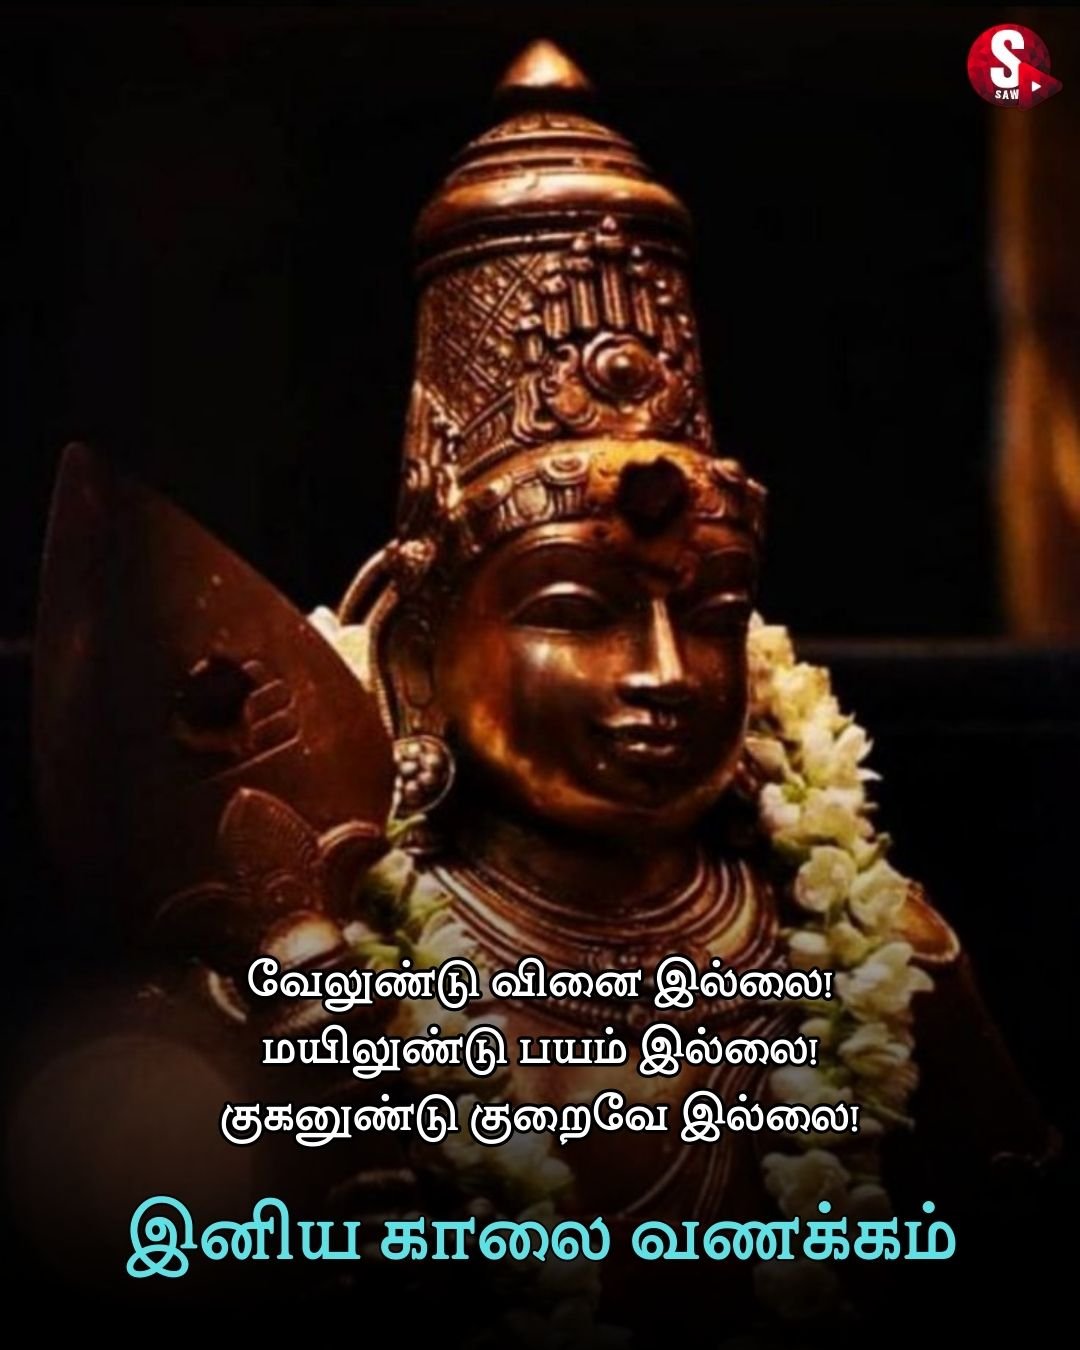 அனைவருக்கும் அன்பான காலை வணக்கம் வாழ்த்துக்கள்.. | Good Moring Quotes in Tamil